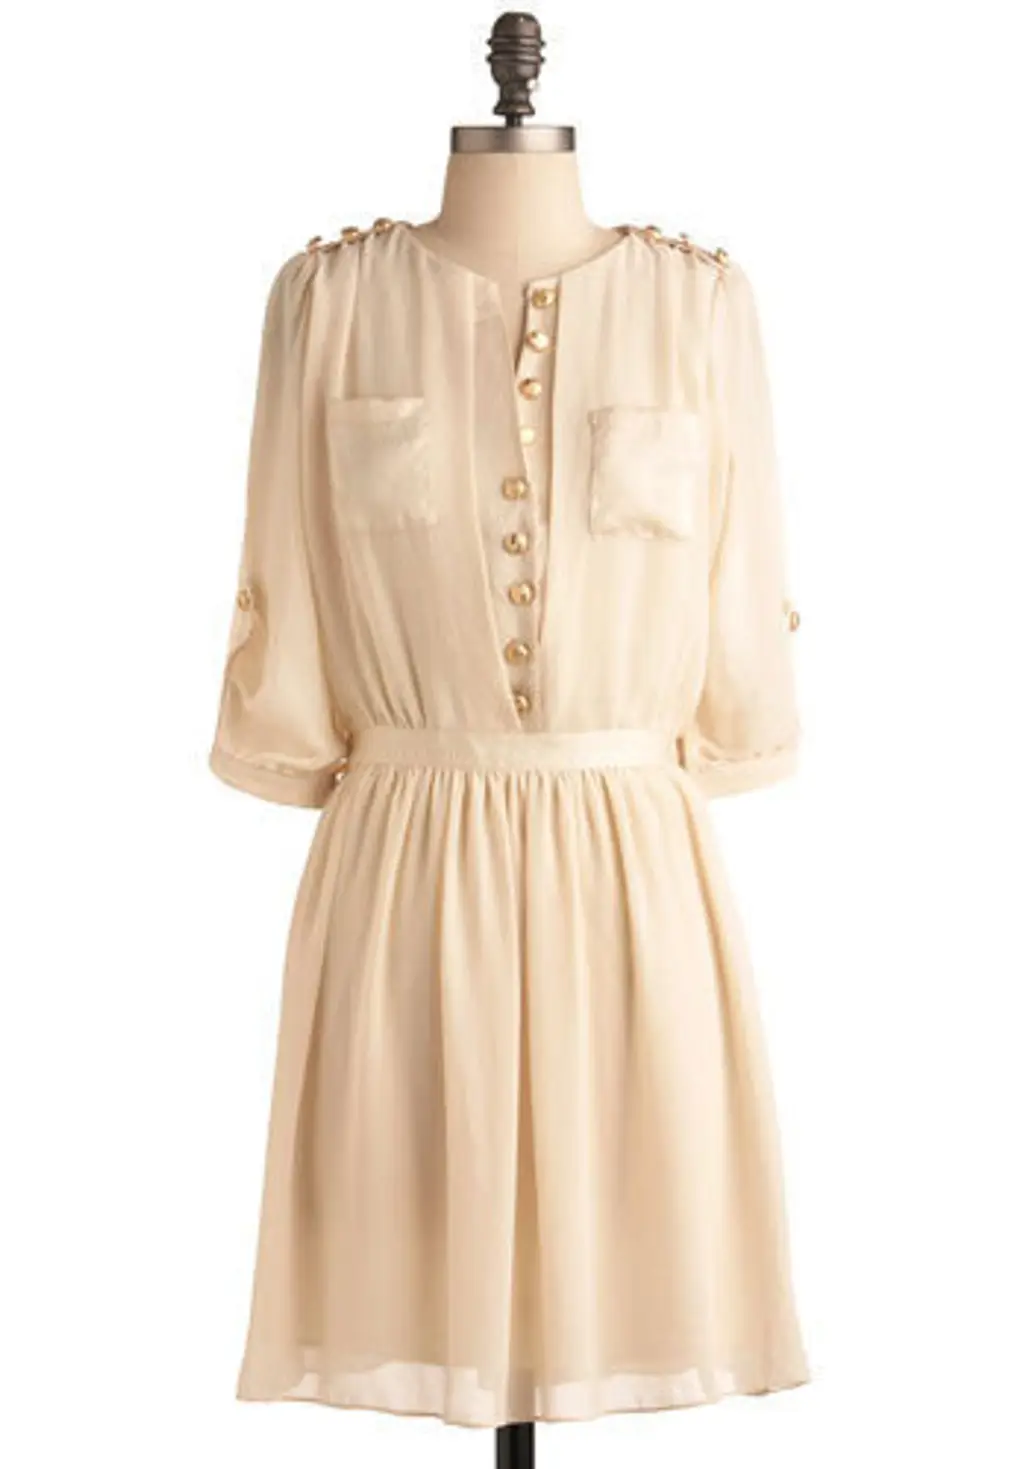 White Chocolate Truffle Dress